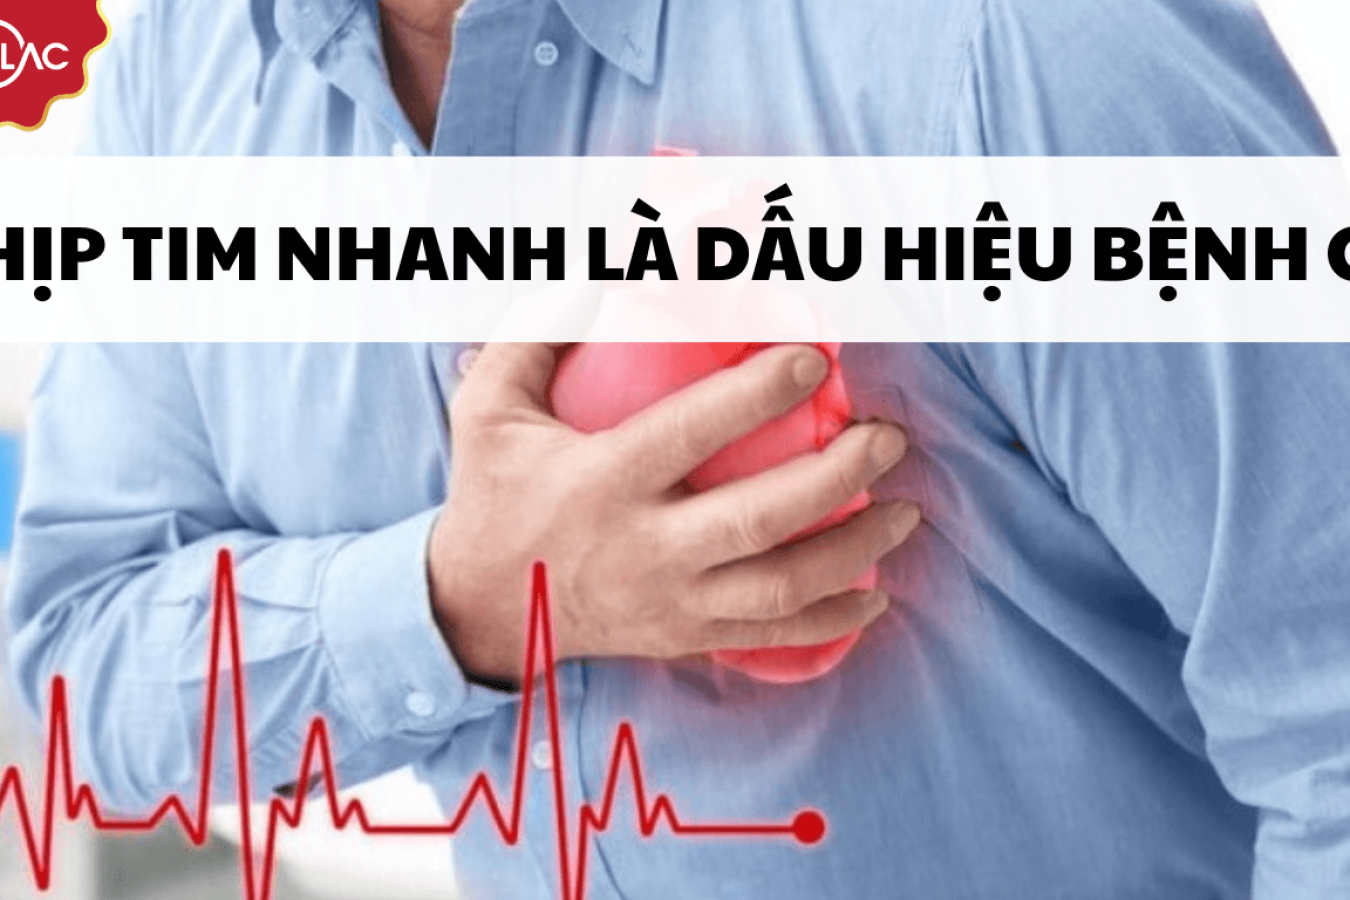 Thắc mắc: Nhịp tim nhanh là dấu hiệu bệnh gì?